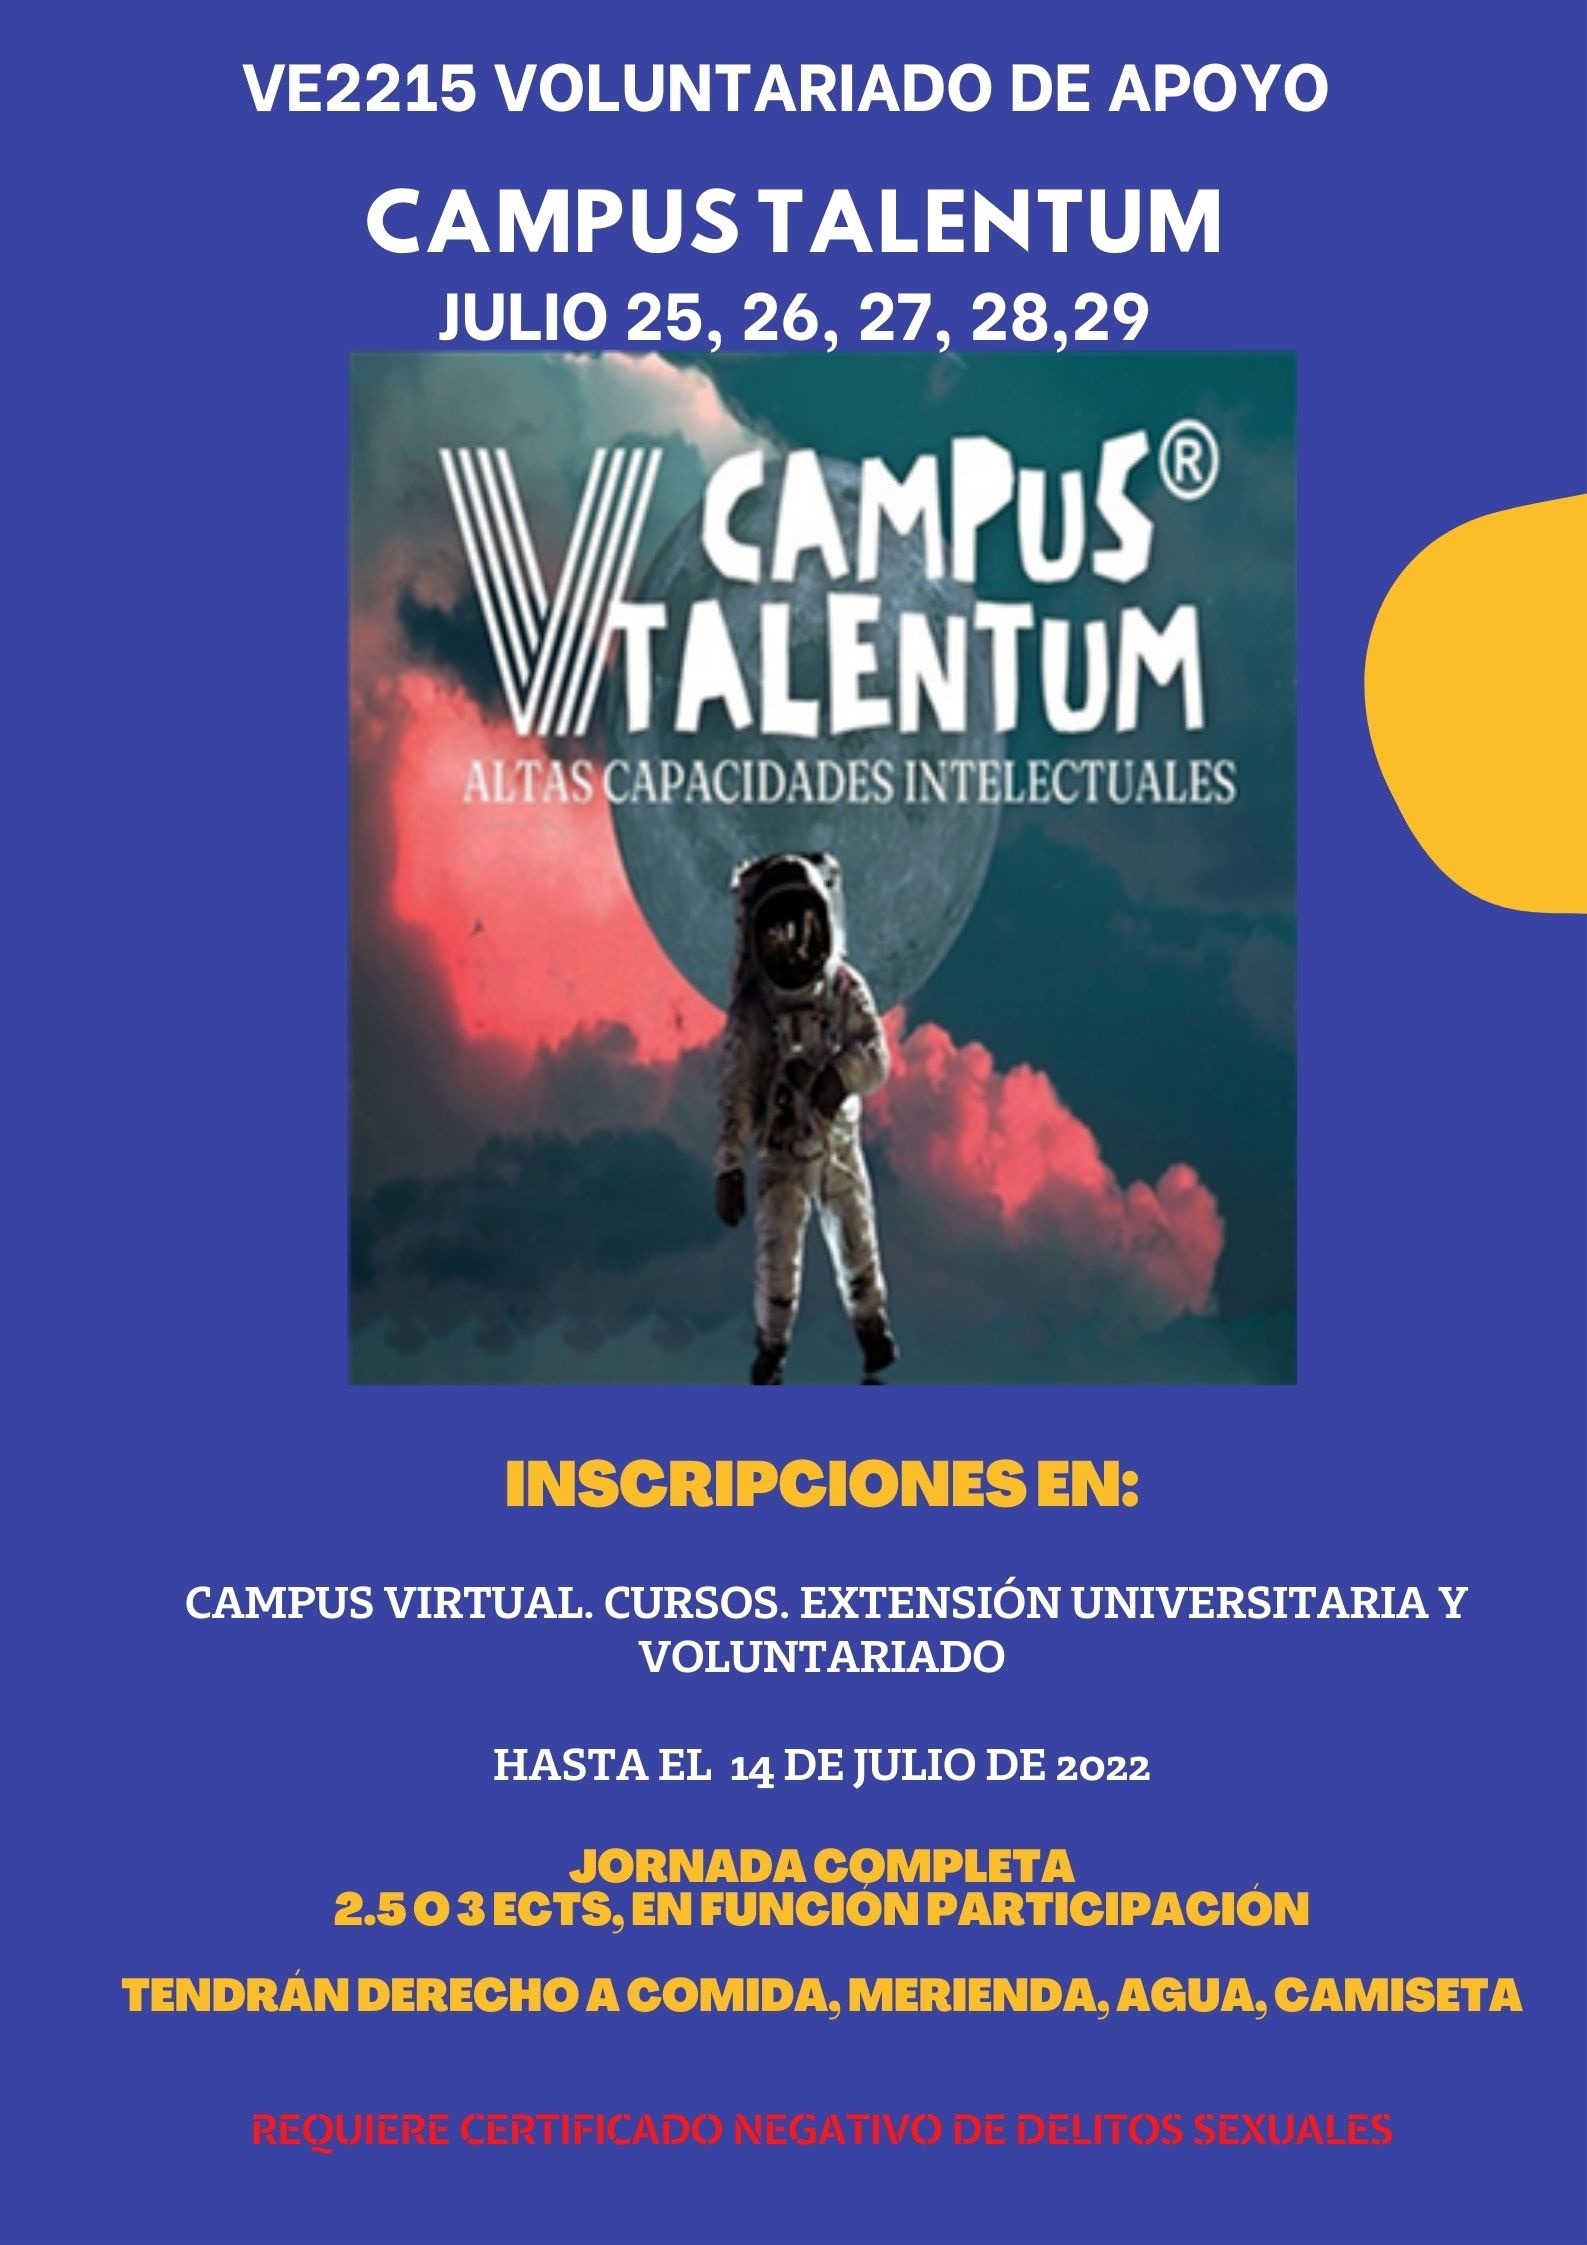 VE2215 Voluntariado de Apoyo Campus Talentum 2022